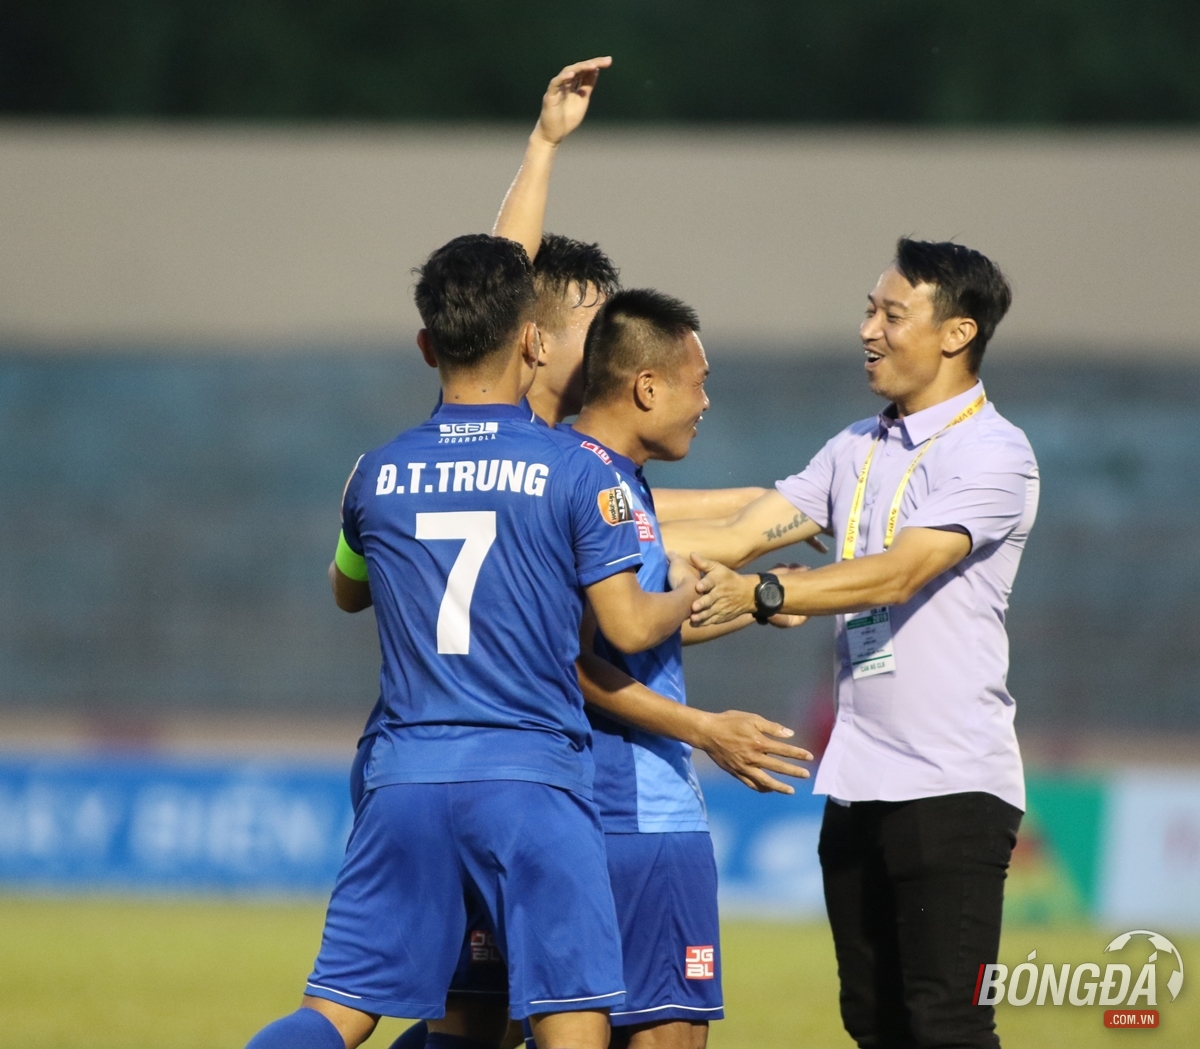 Vi hành sân Tam Kỳ, HLV Park Hang-seo chấm thêm một tuyển thủ cho U23 Việt Nam? - Bóng Đá